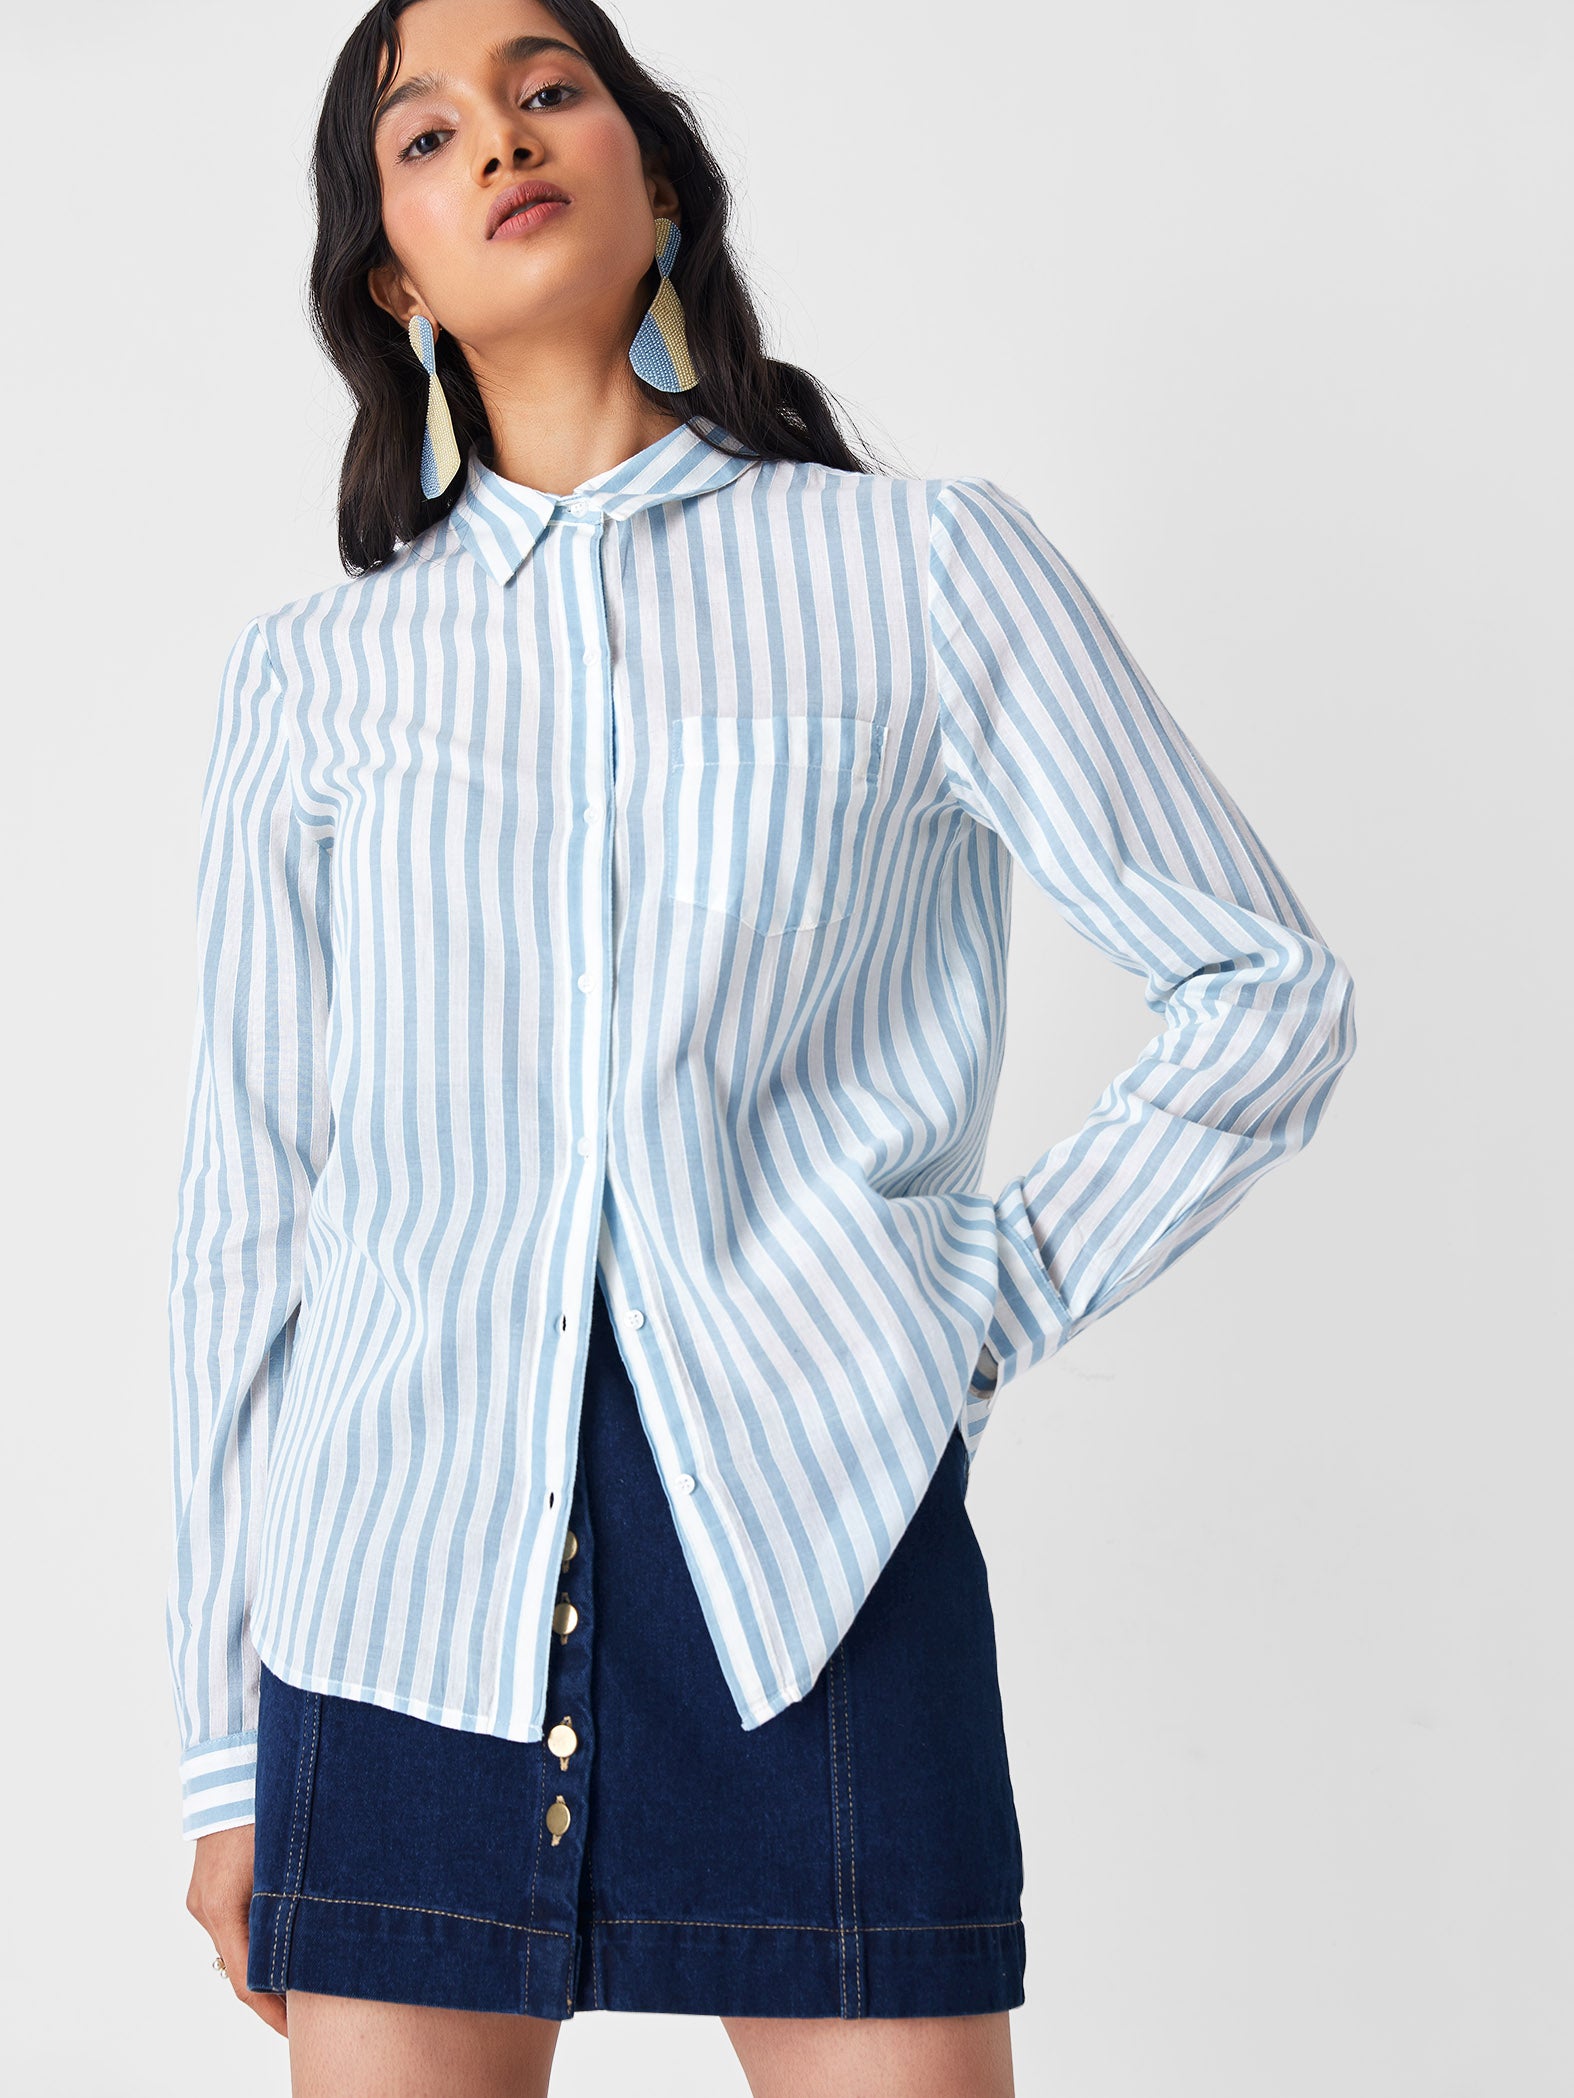 Aqua & White Stripe Shirt